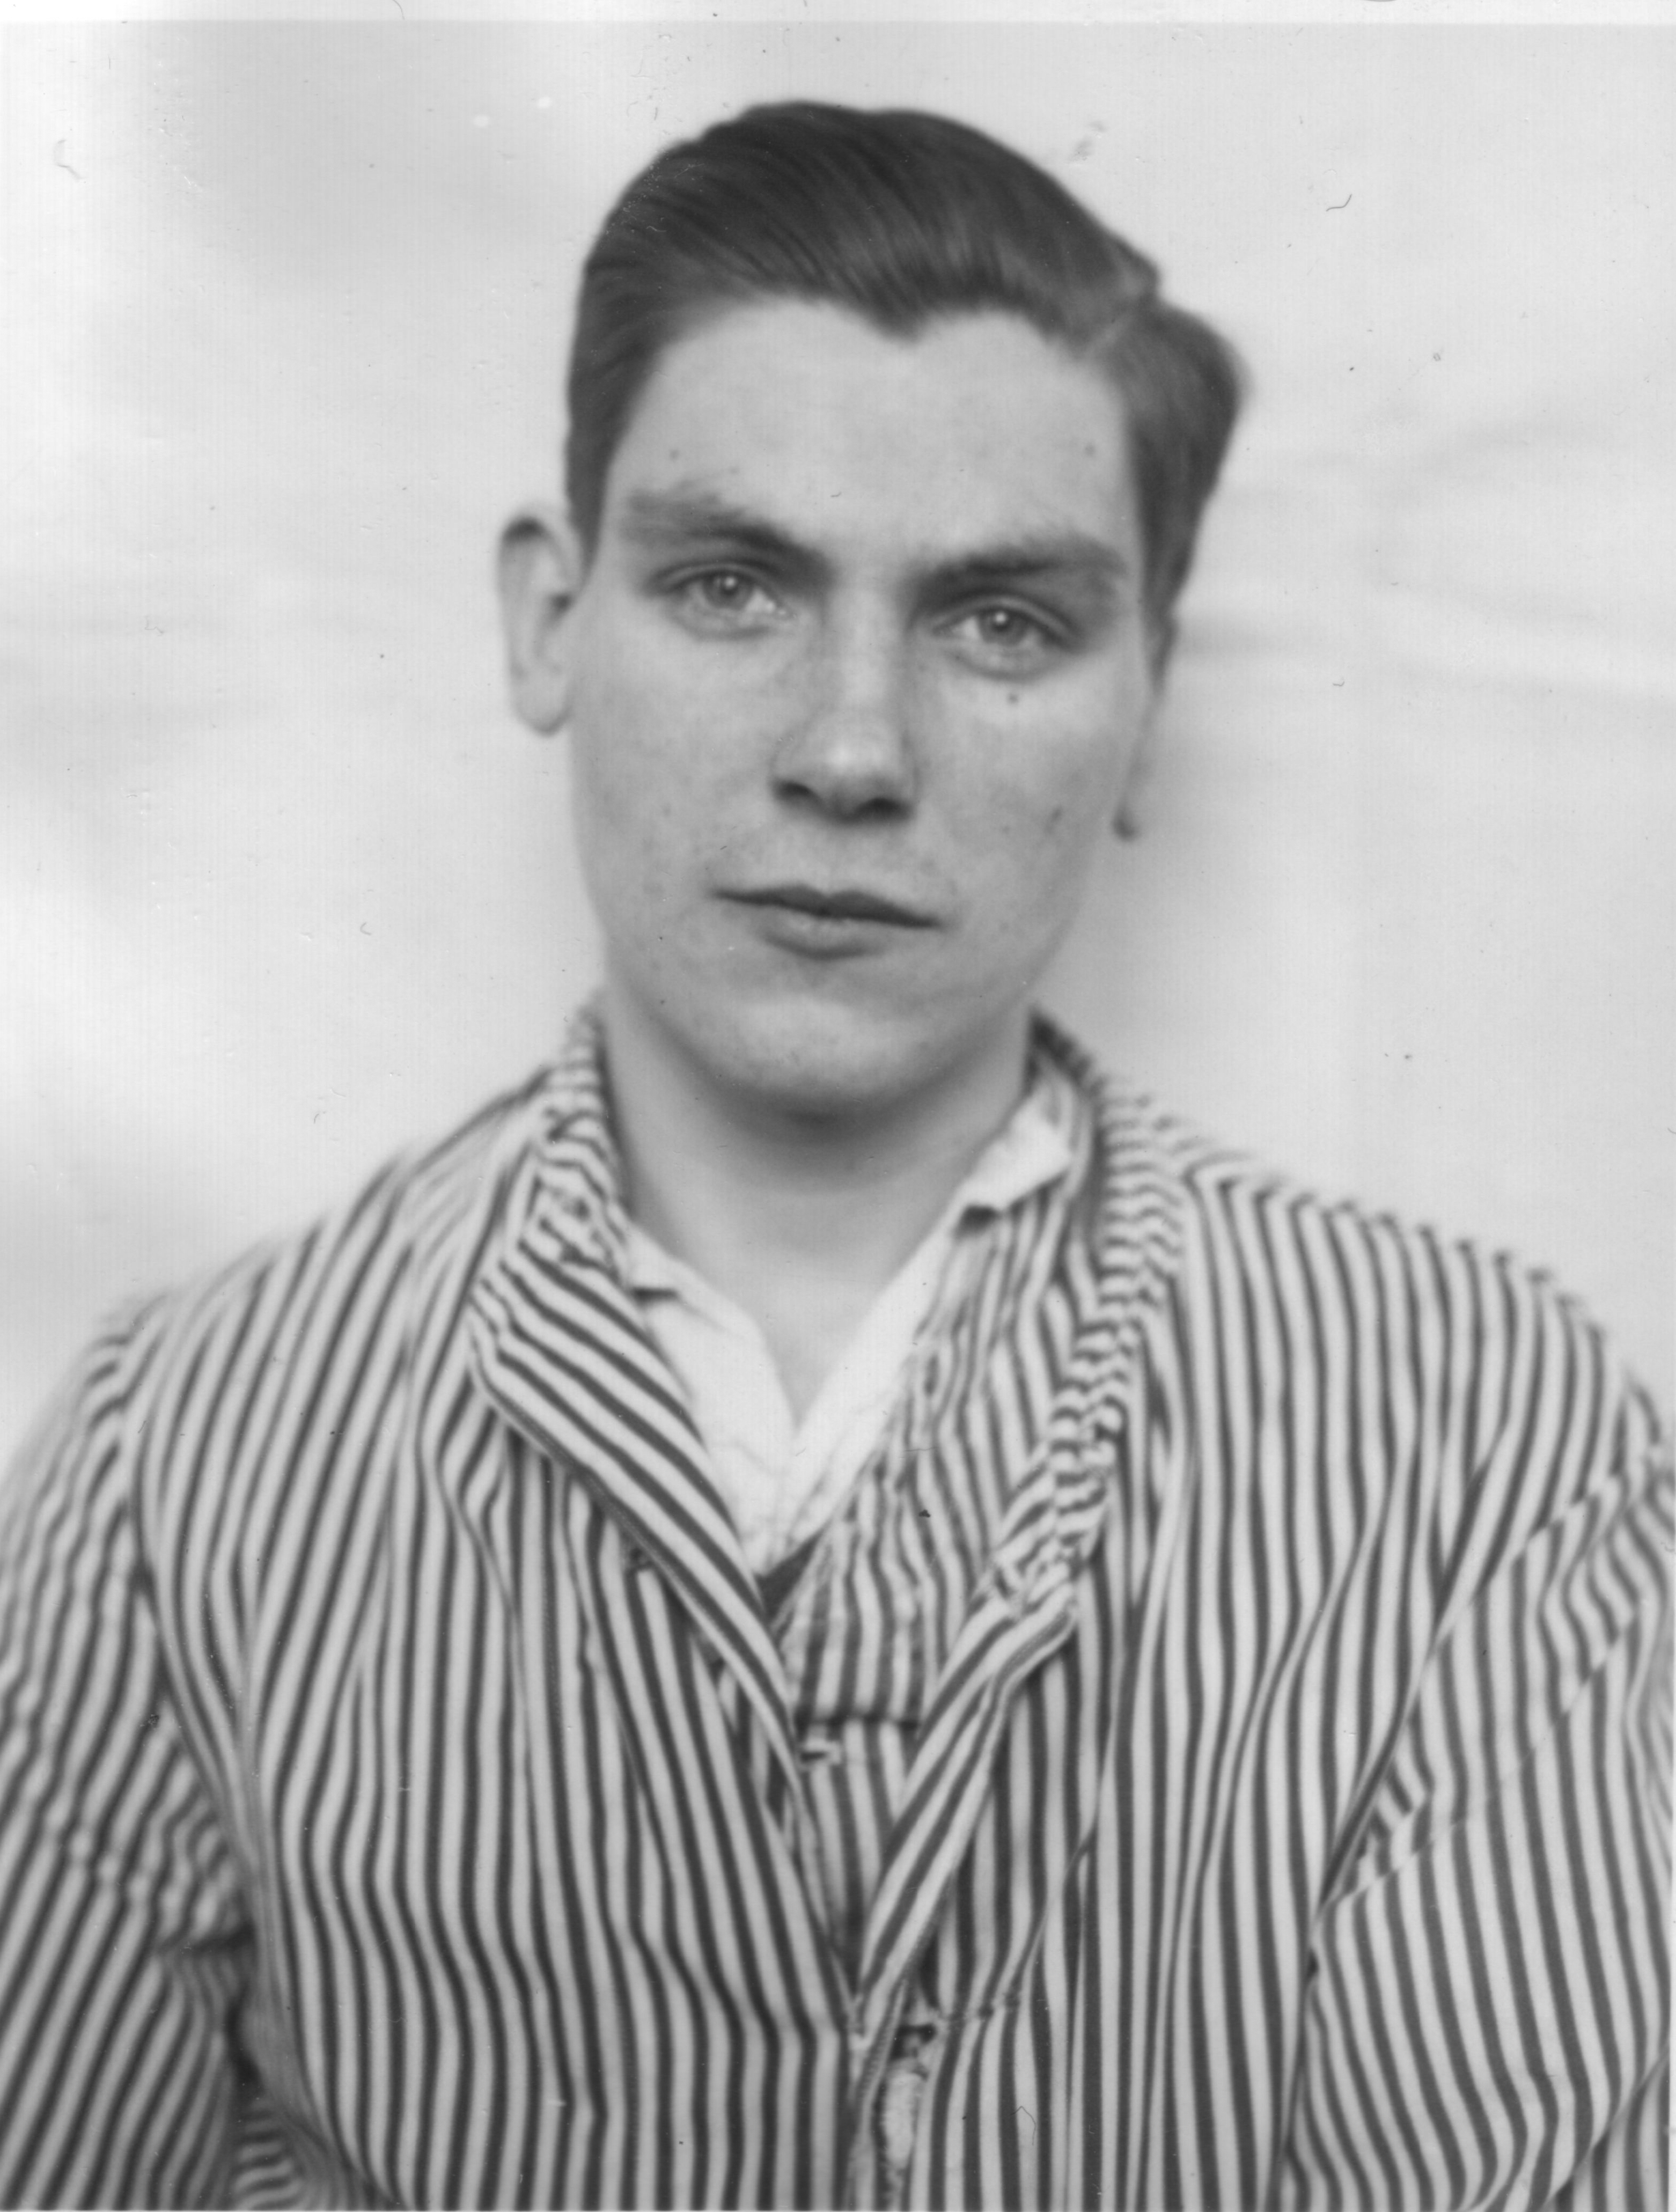 Kurt Gäth, genannt Ladiges, in Anstaltskleidung der „Heil- und Pflegeanstalt Langenhorn“, ca. 1940